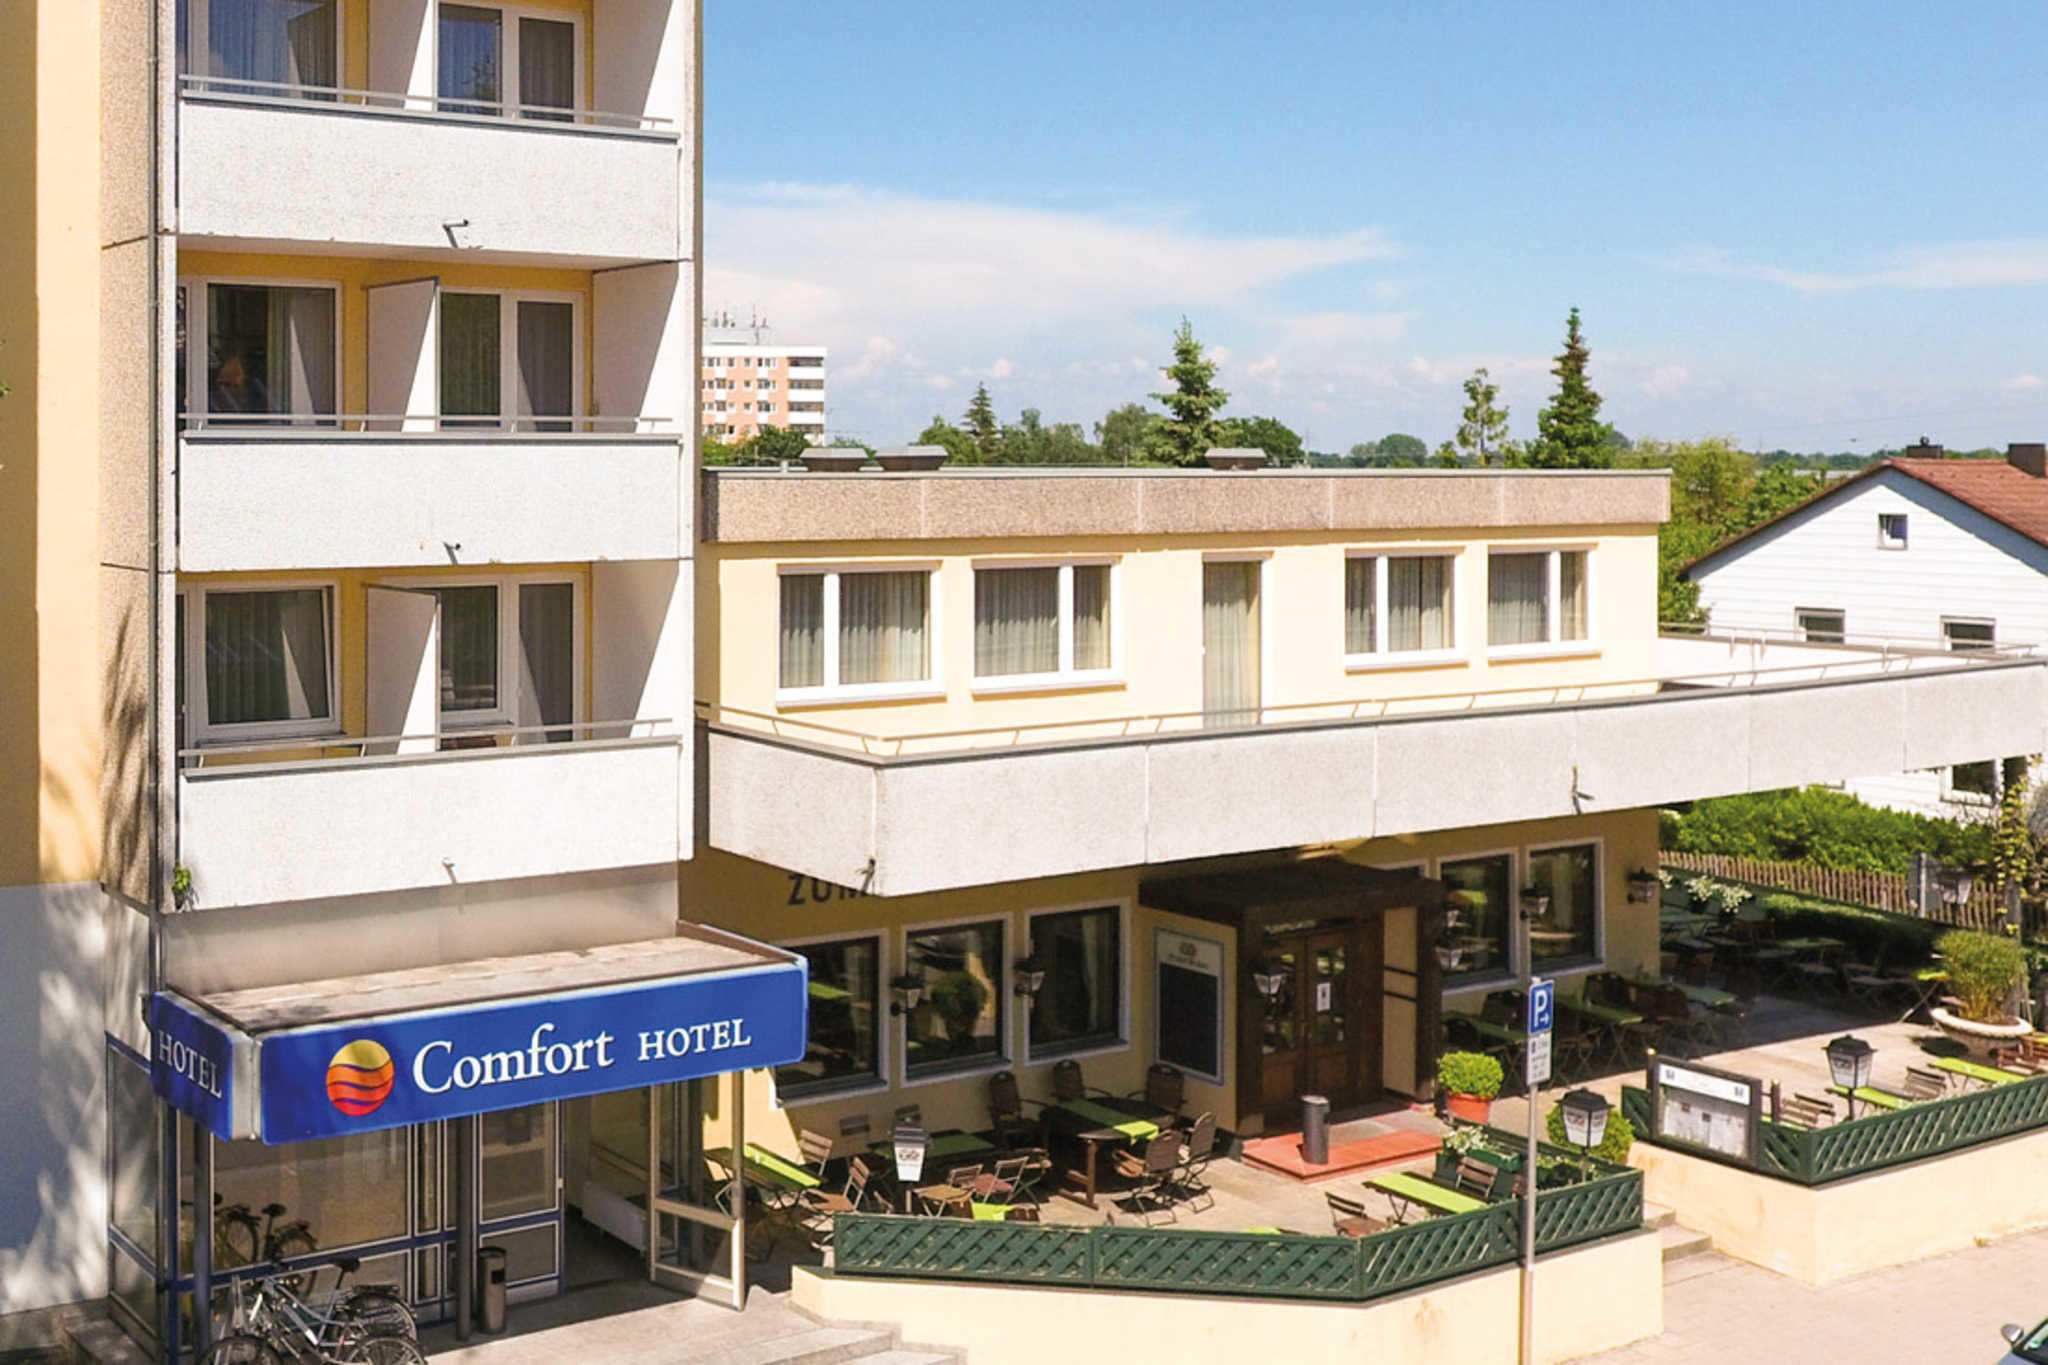 Comfort Hotel am Medienpark, Bahnhofstrasse 15 in Unterfoehring